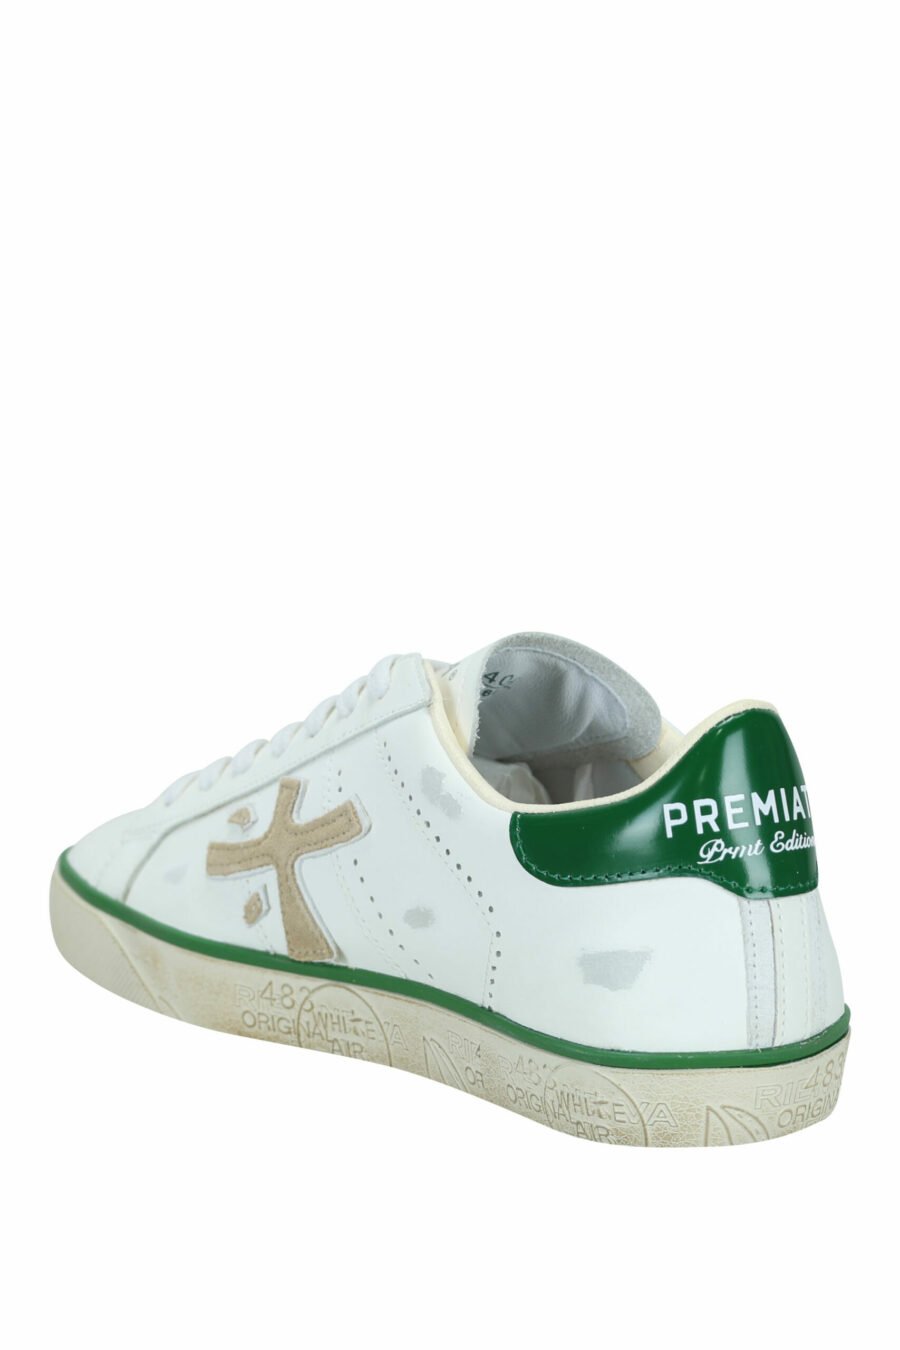 Chaussures blanches portées avec la mention verte "Steven 6645" - 8053680394497 3 échelles